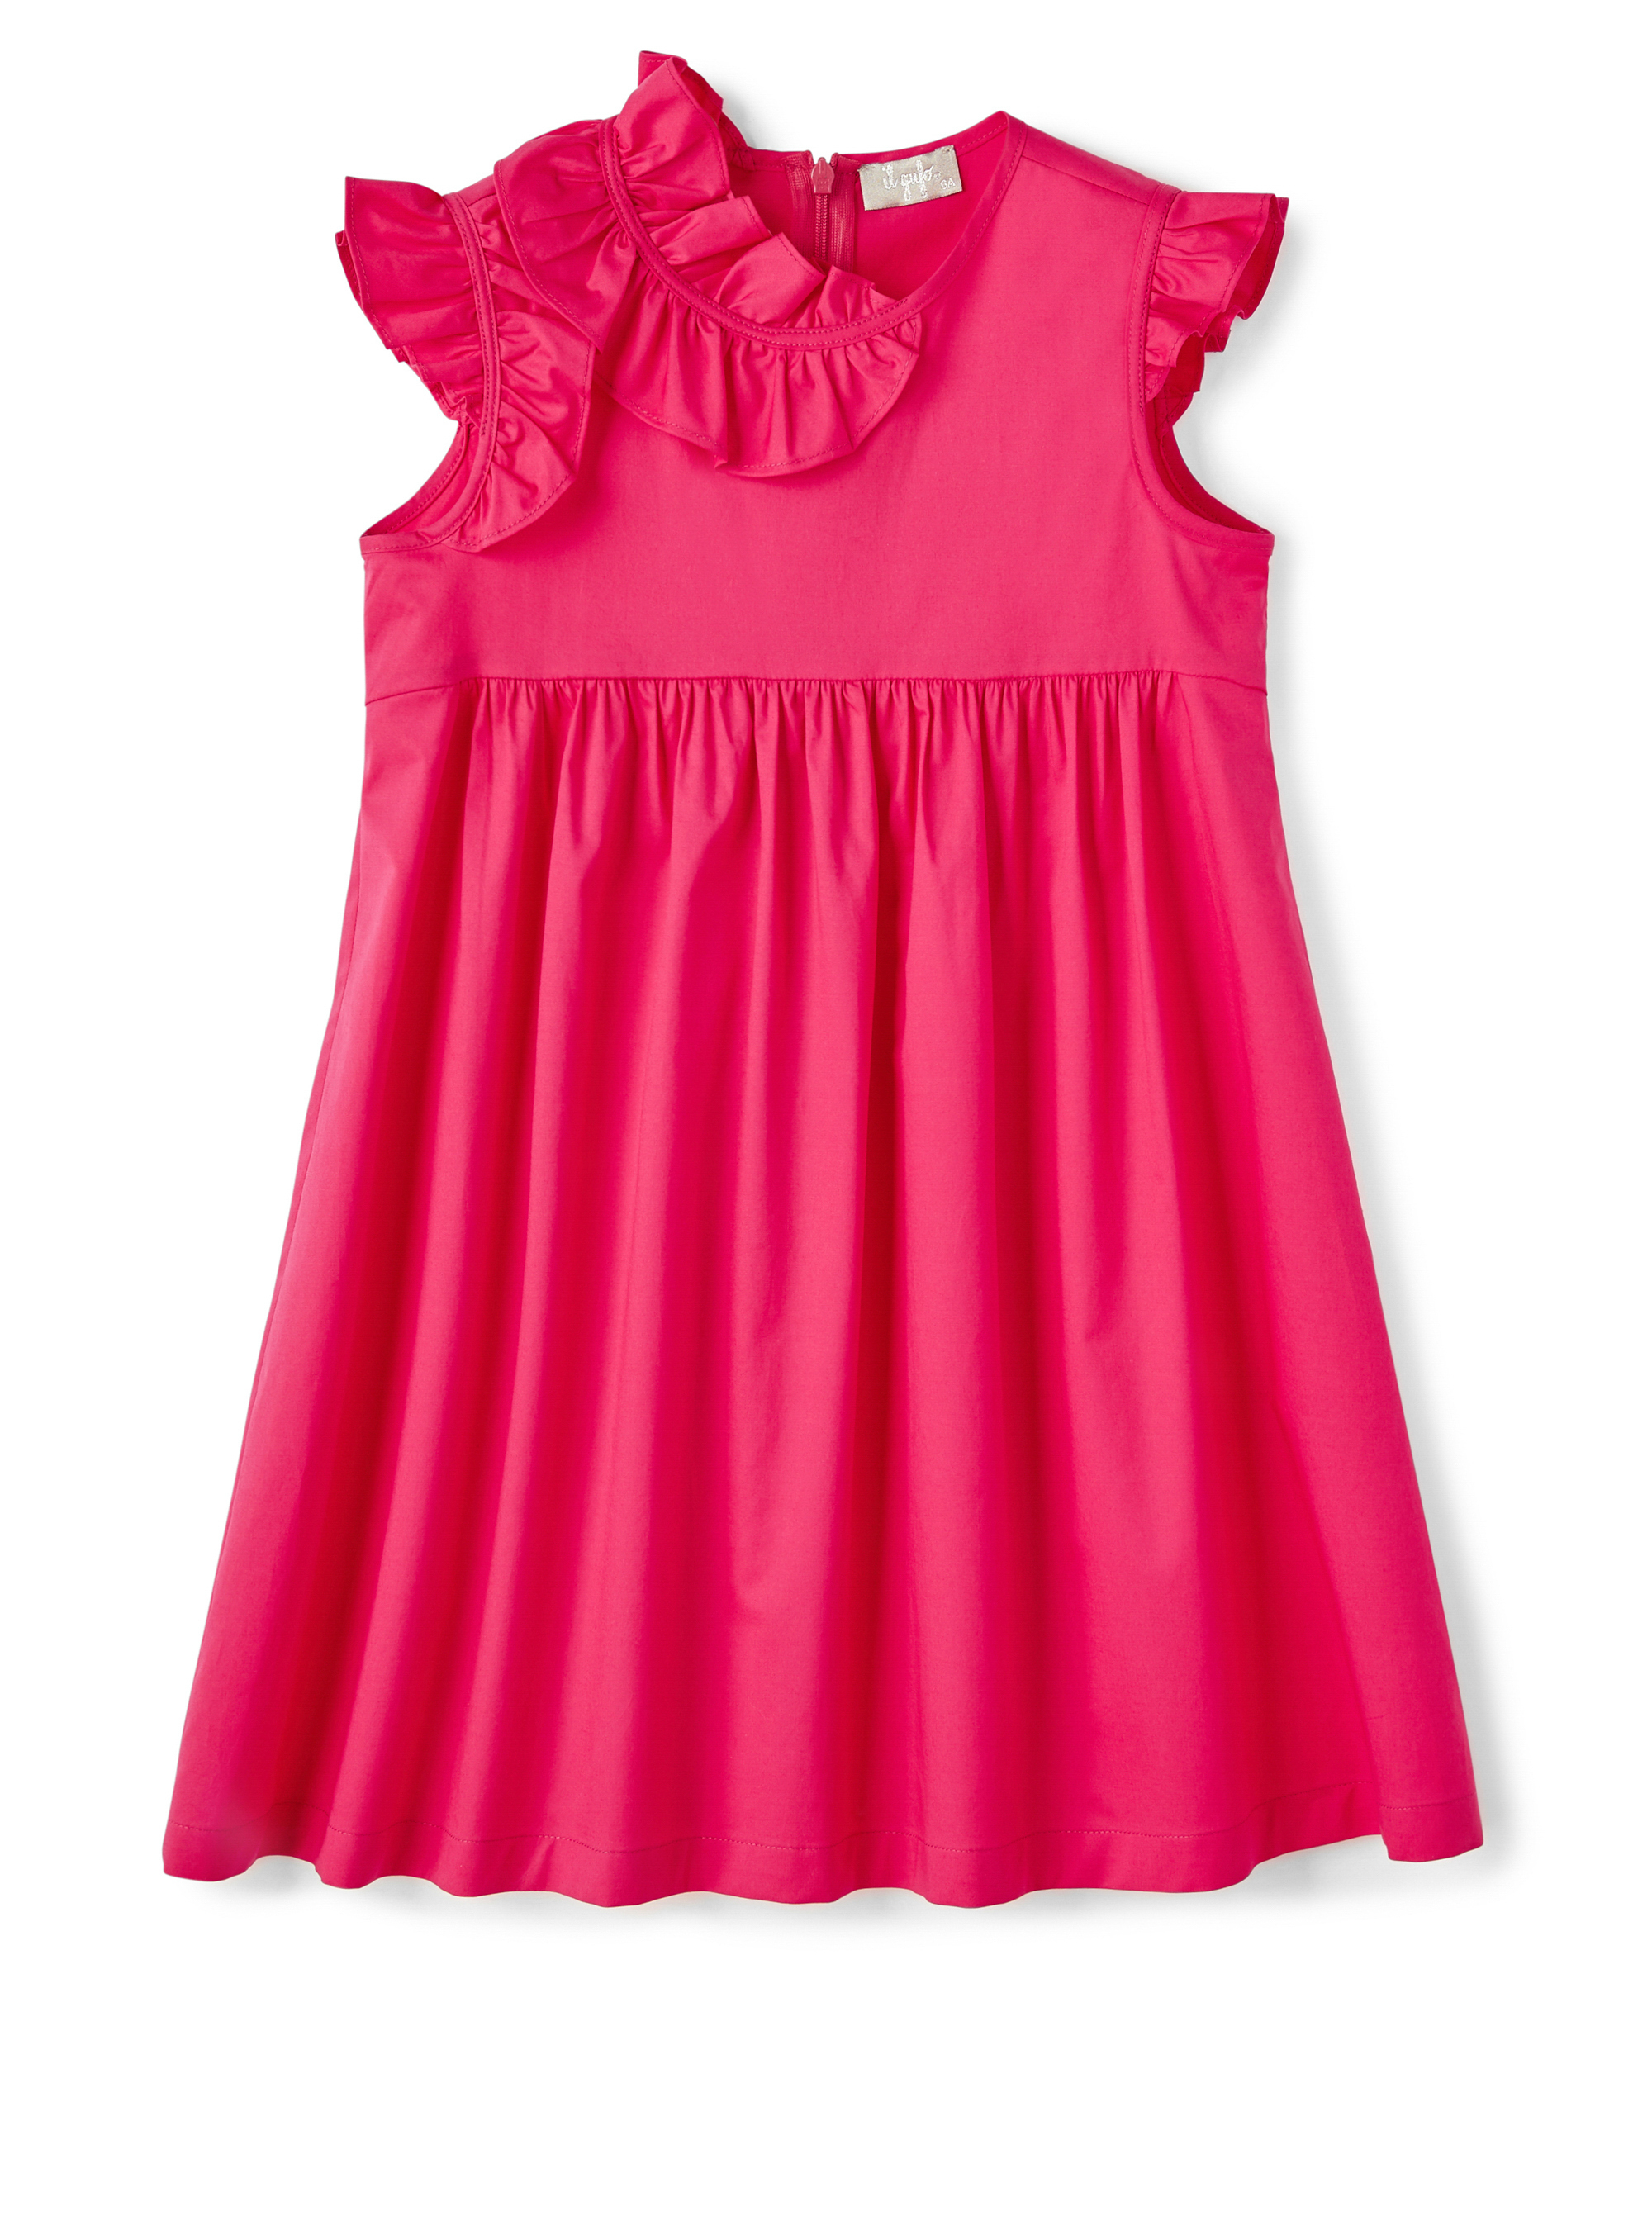 Red poplin dress with ruffles - Dresses - Il Gufo